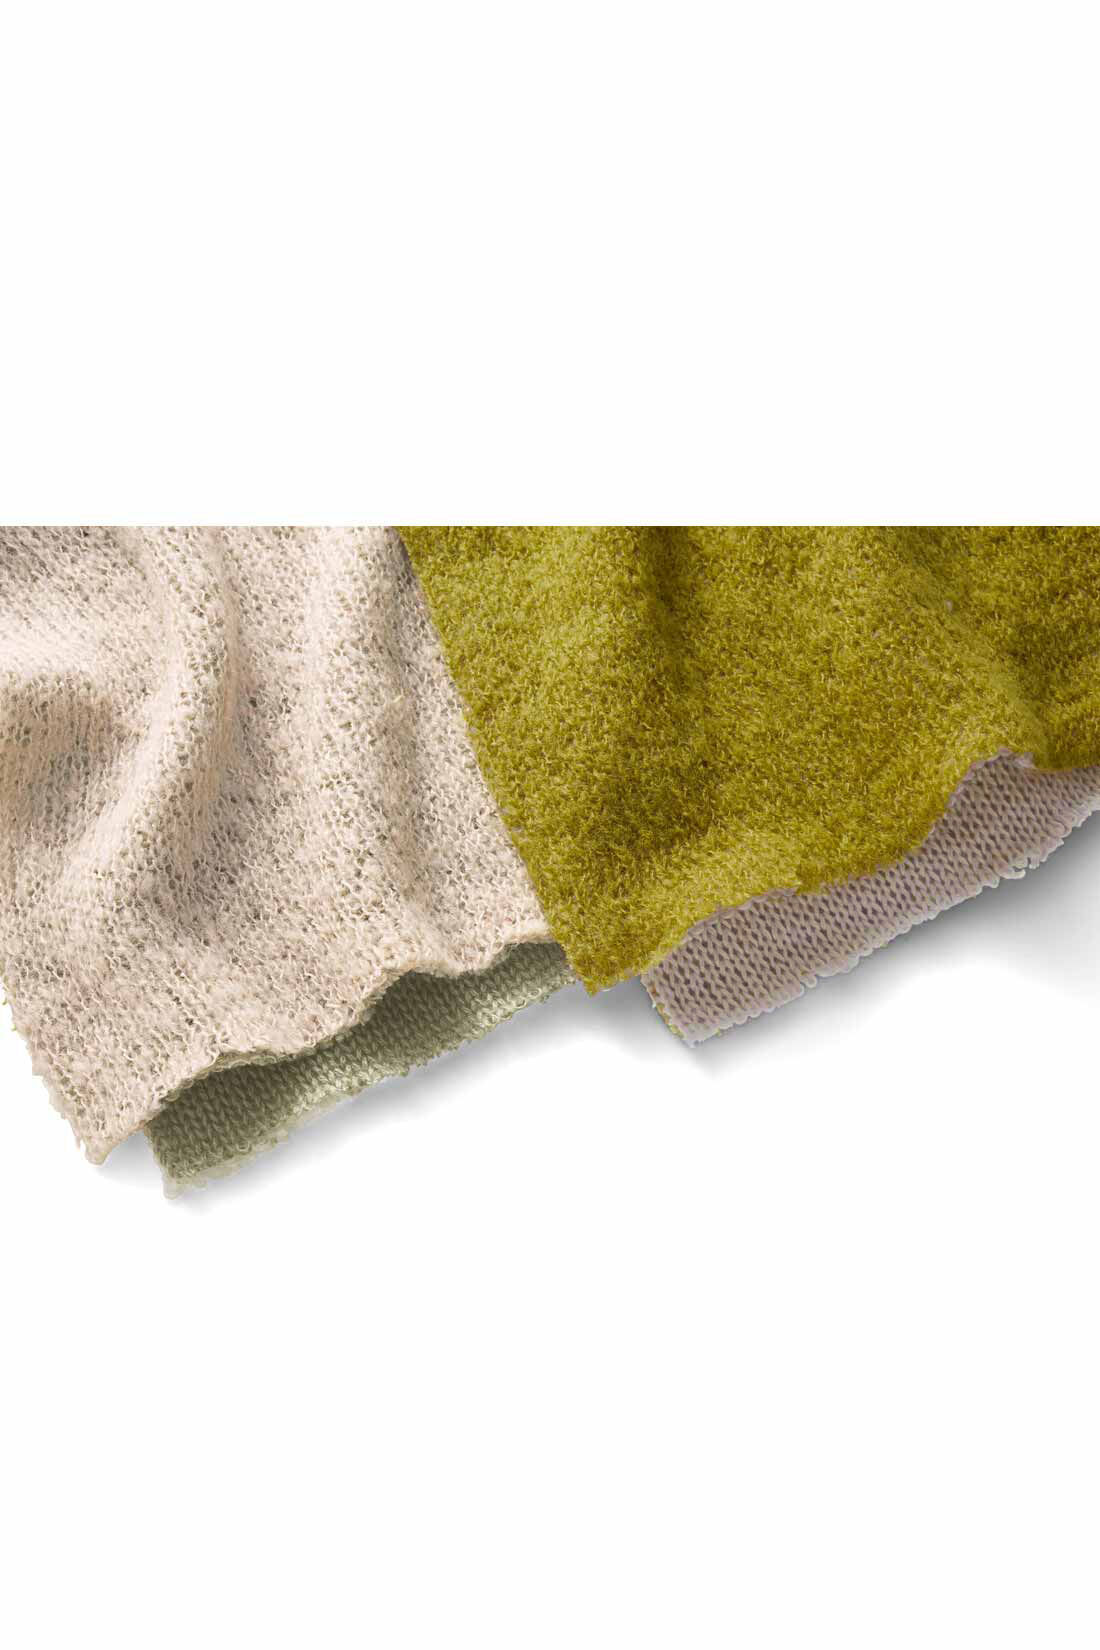 MEDE19F|MEDE19F　ダブルフェイスタートルニット〈ベージュ〉|表側は毛足のある糸を使った、透け感のある甘編みニット。裏側は肌当たりのいい天じく編み素材。二重仕立てにしているため、編み地が風を通しにくく、暖かく着られます。